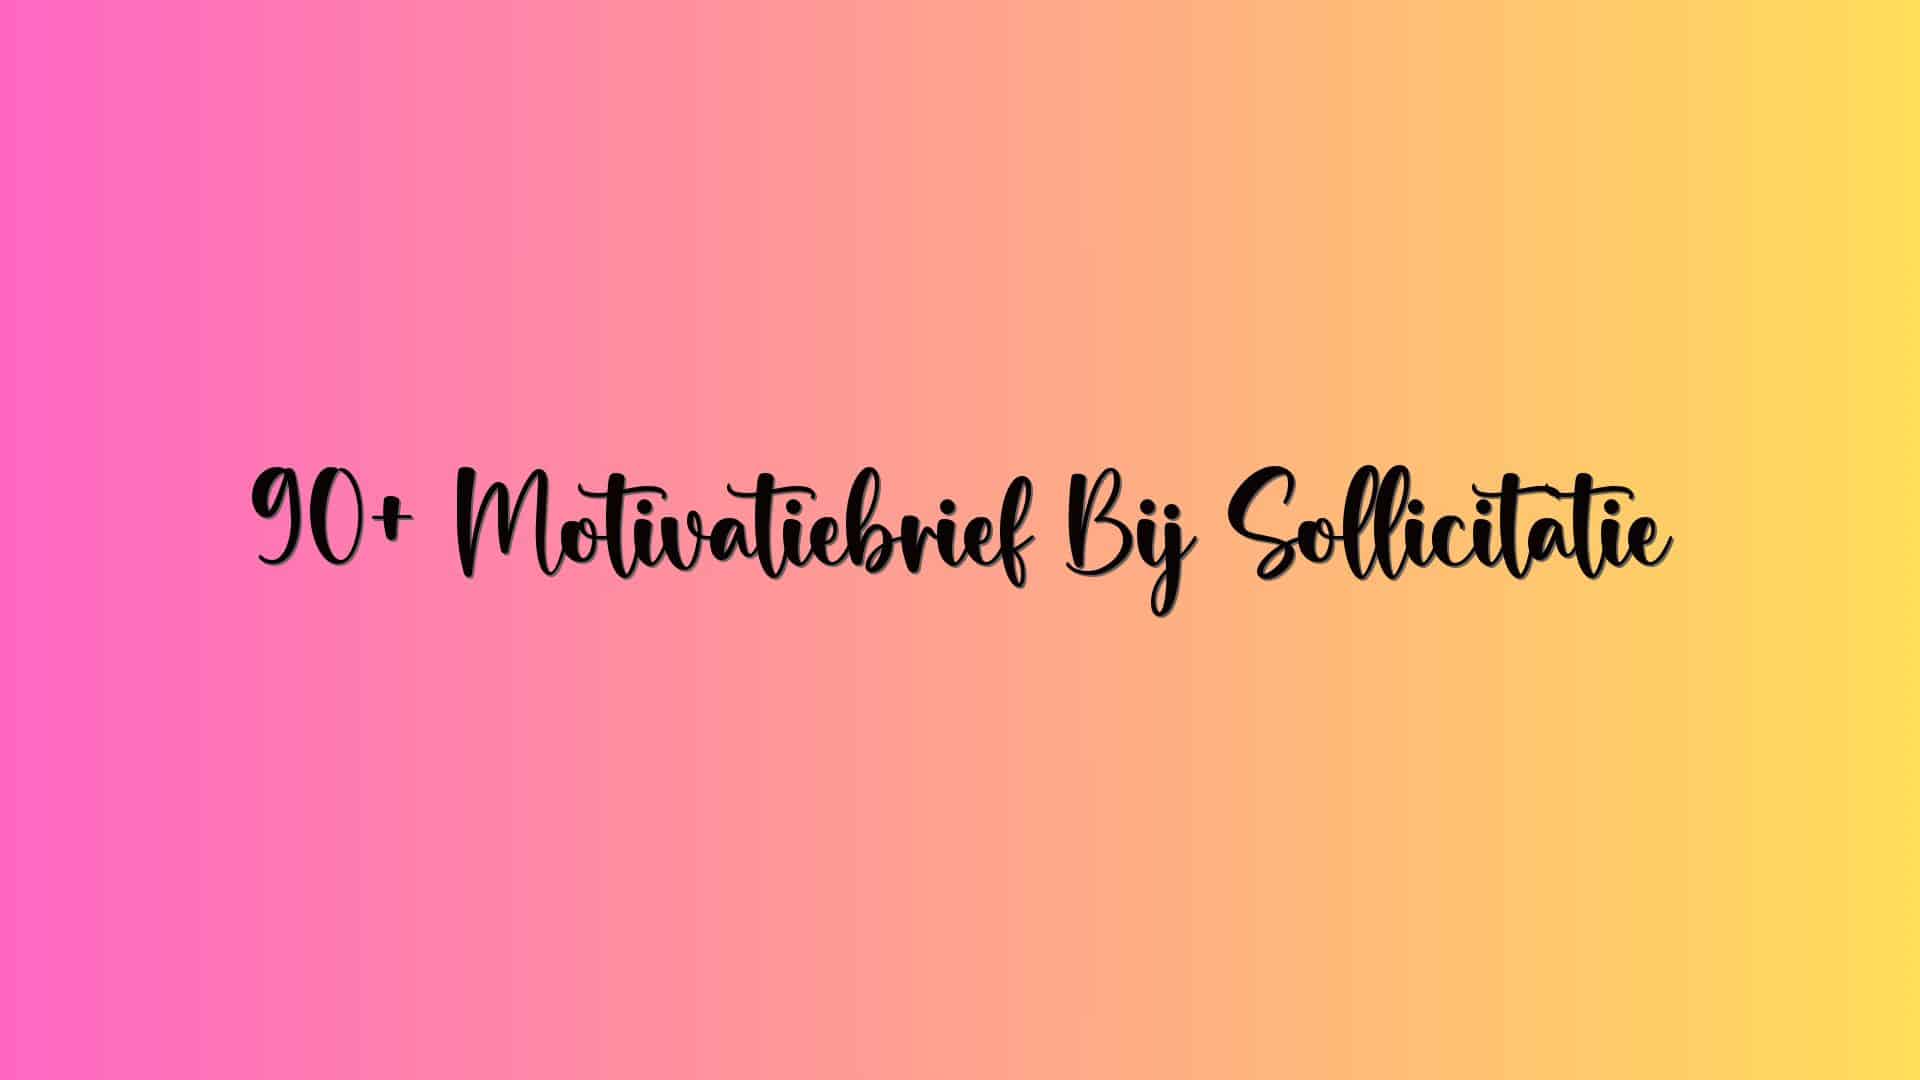 90+ Motivatiebrief Bij Sollicitatie